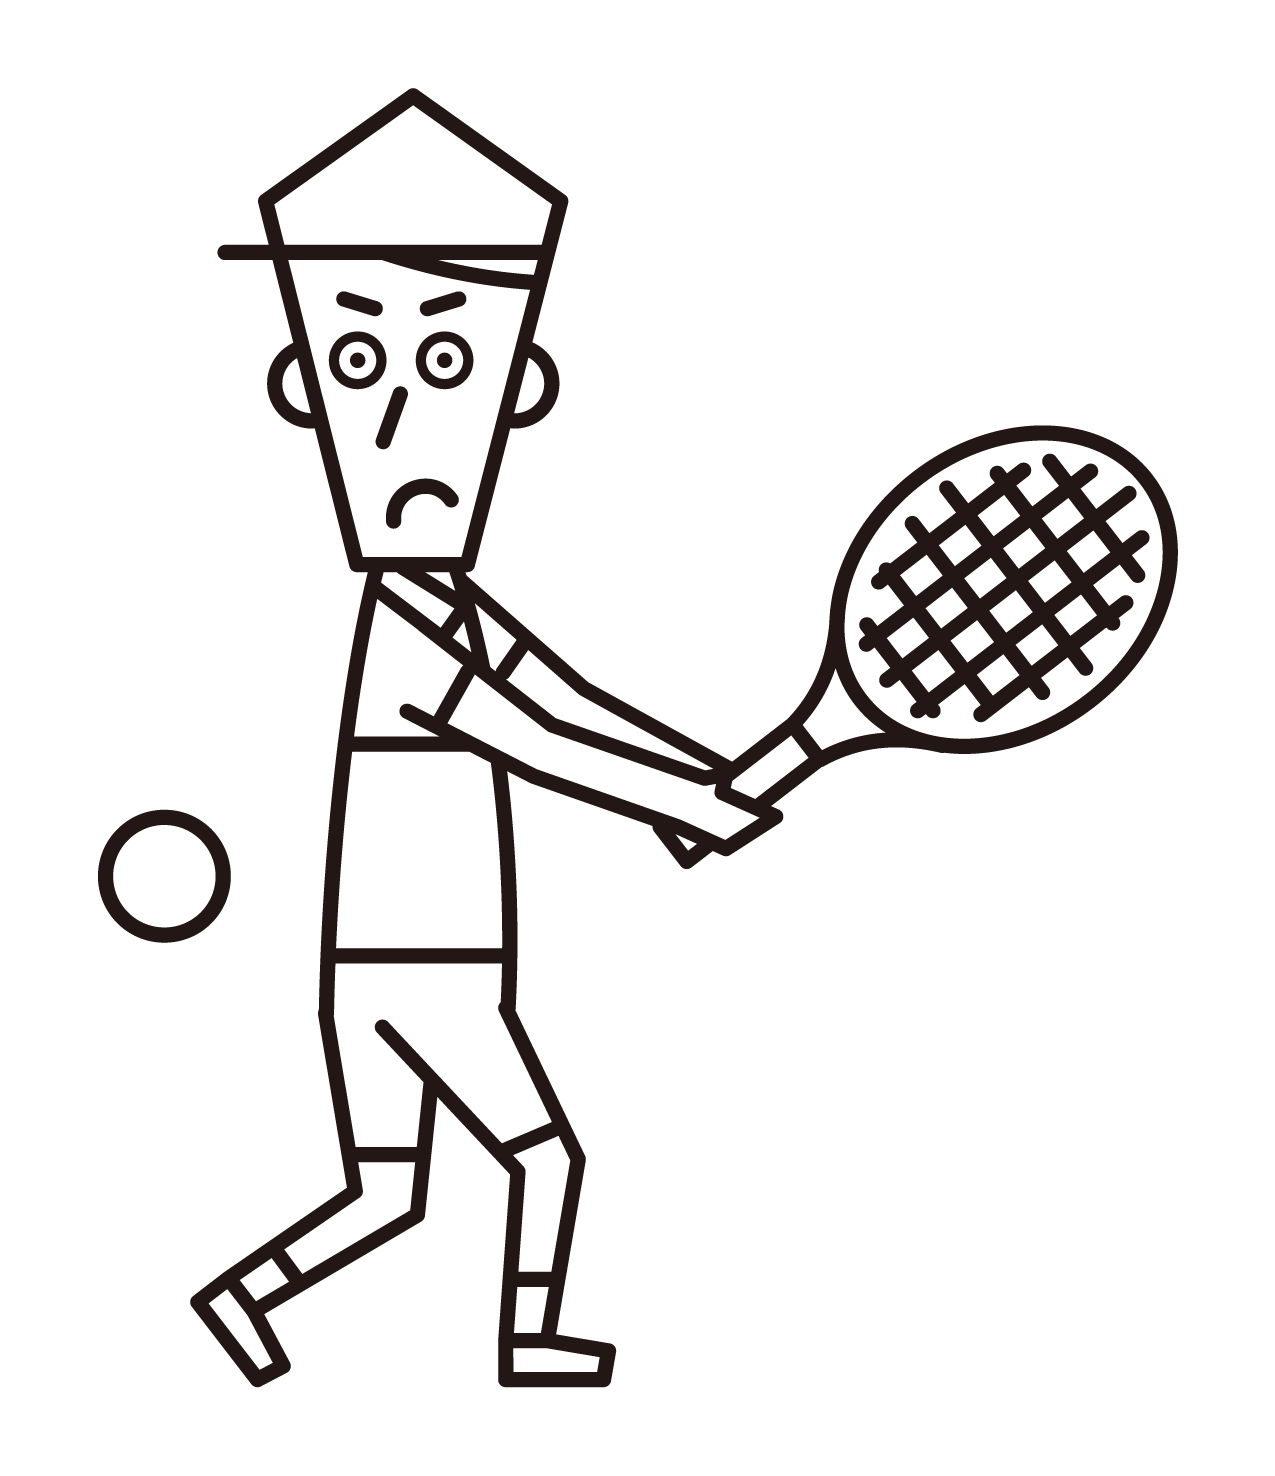 バックハンドストロークでボールを打ち返すテニスの選手（男性）のイラスト